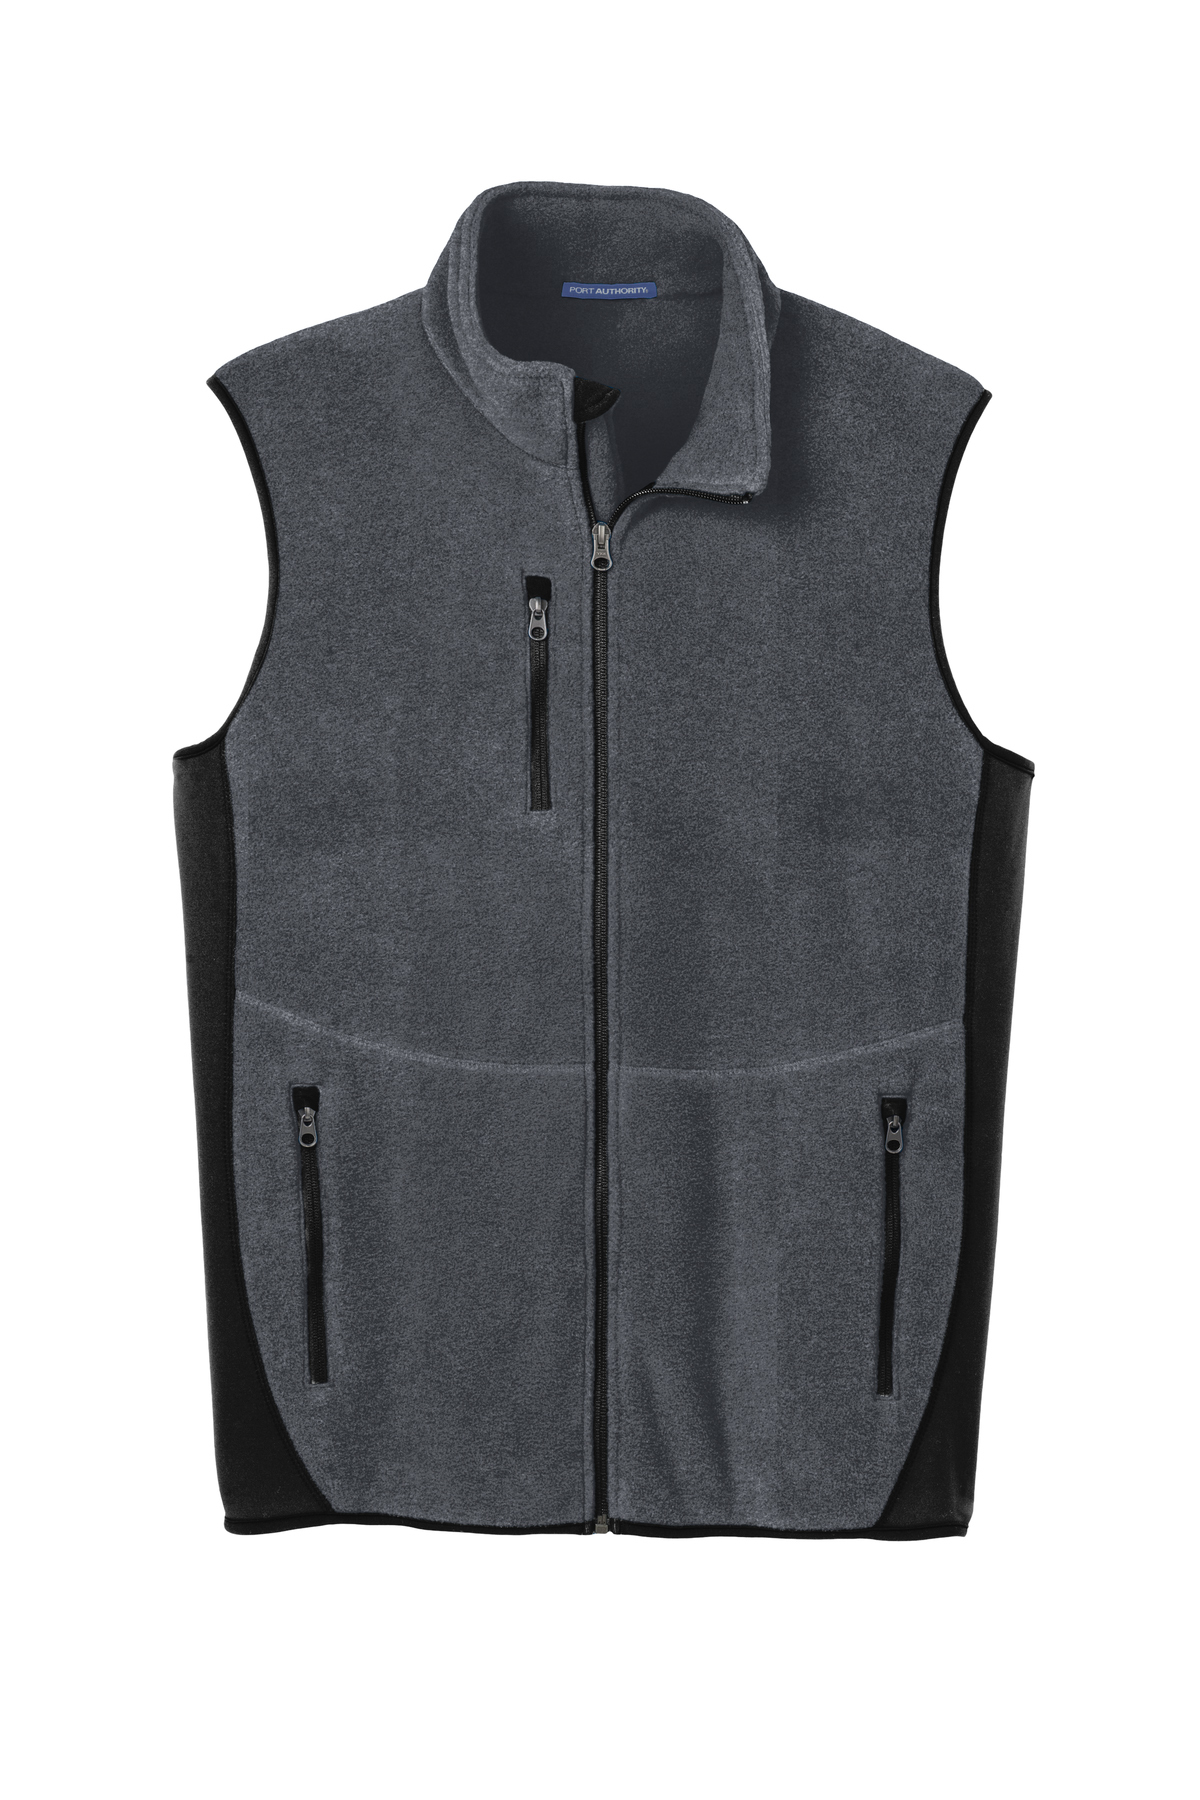 Port Authority R-Tek Pro Fleece Full-Zip Vest | Product | Company Casuals